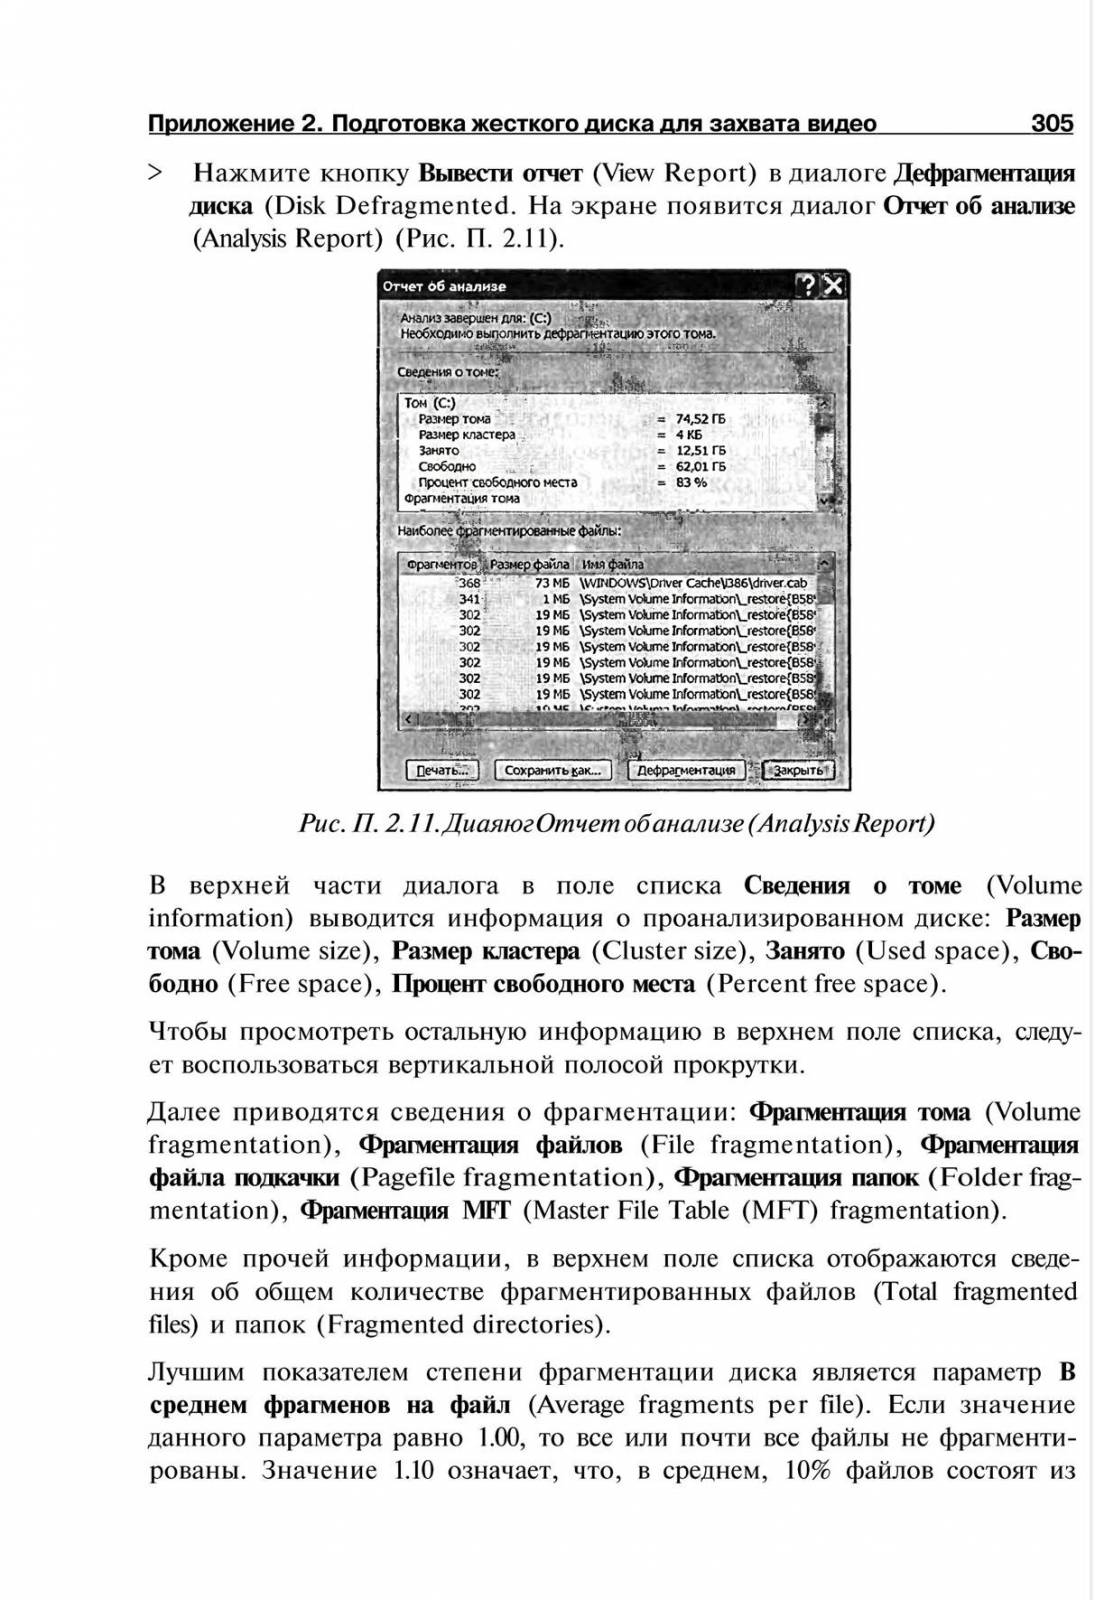 http://redaktori-uroki.3dn.ru/_ph/14/907088964.jpg